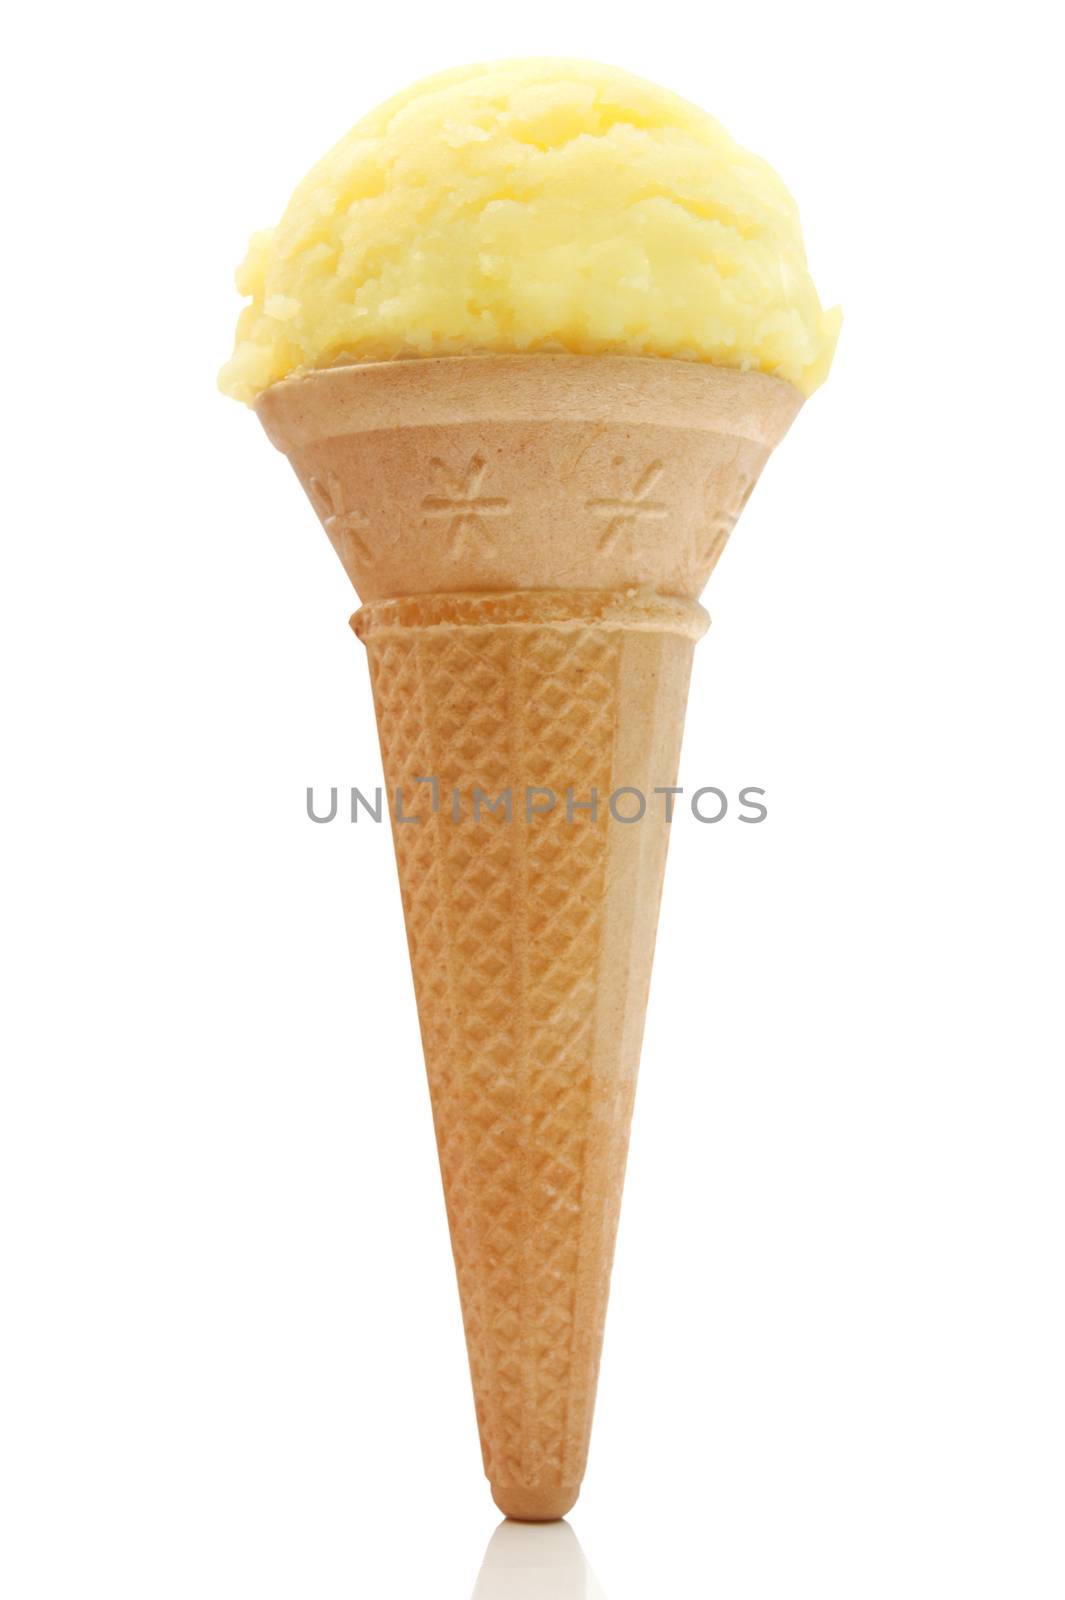 Vanilla flavored ice cream in a cone 